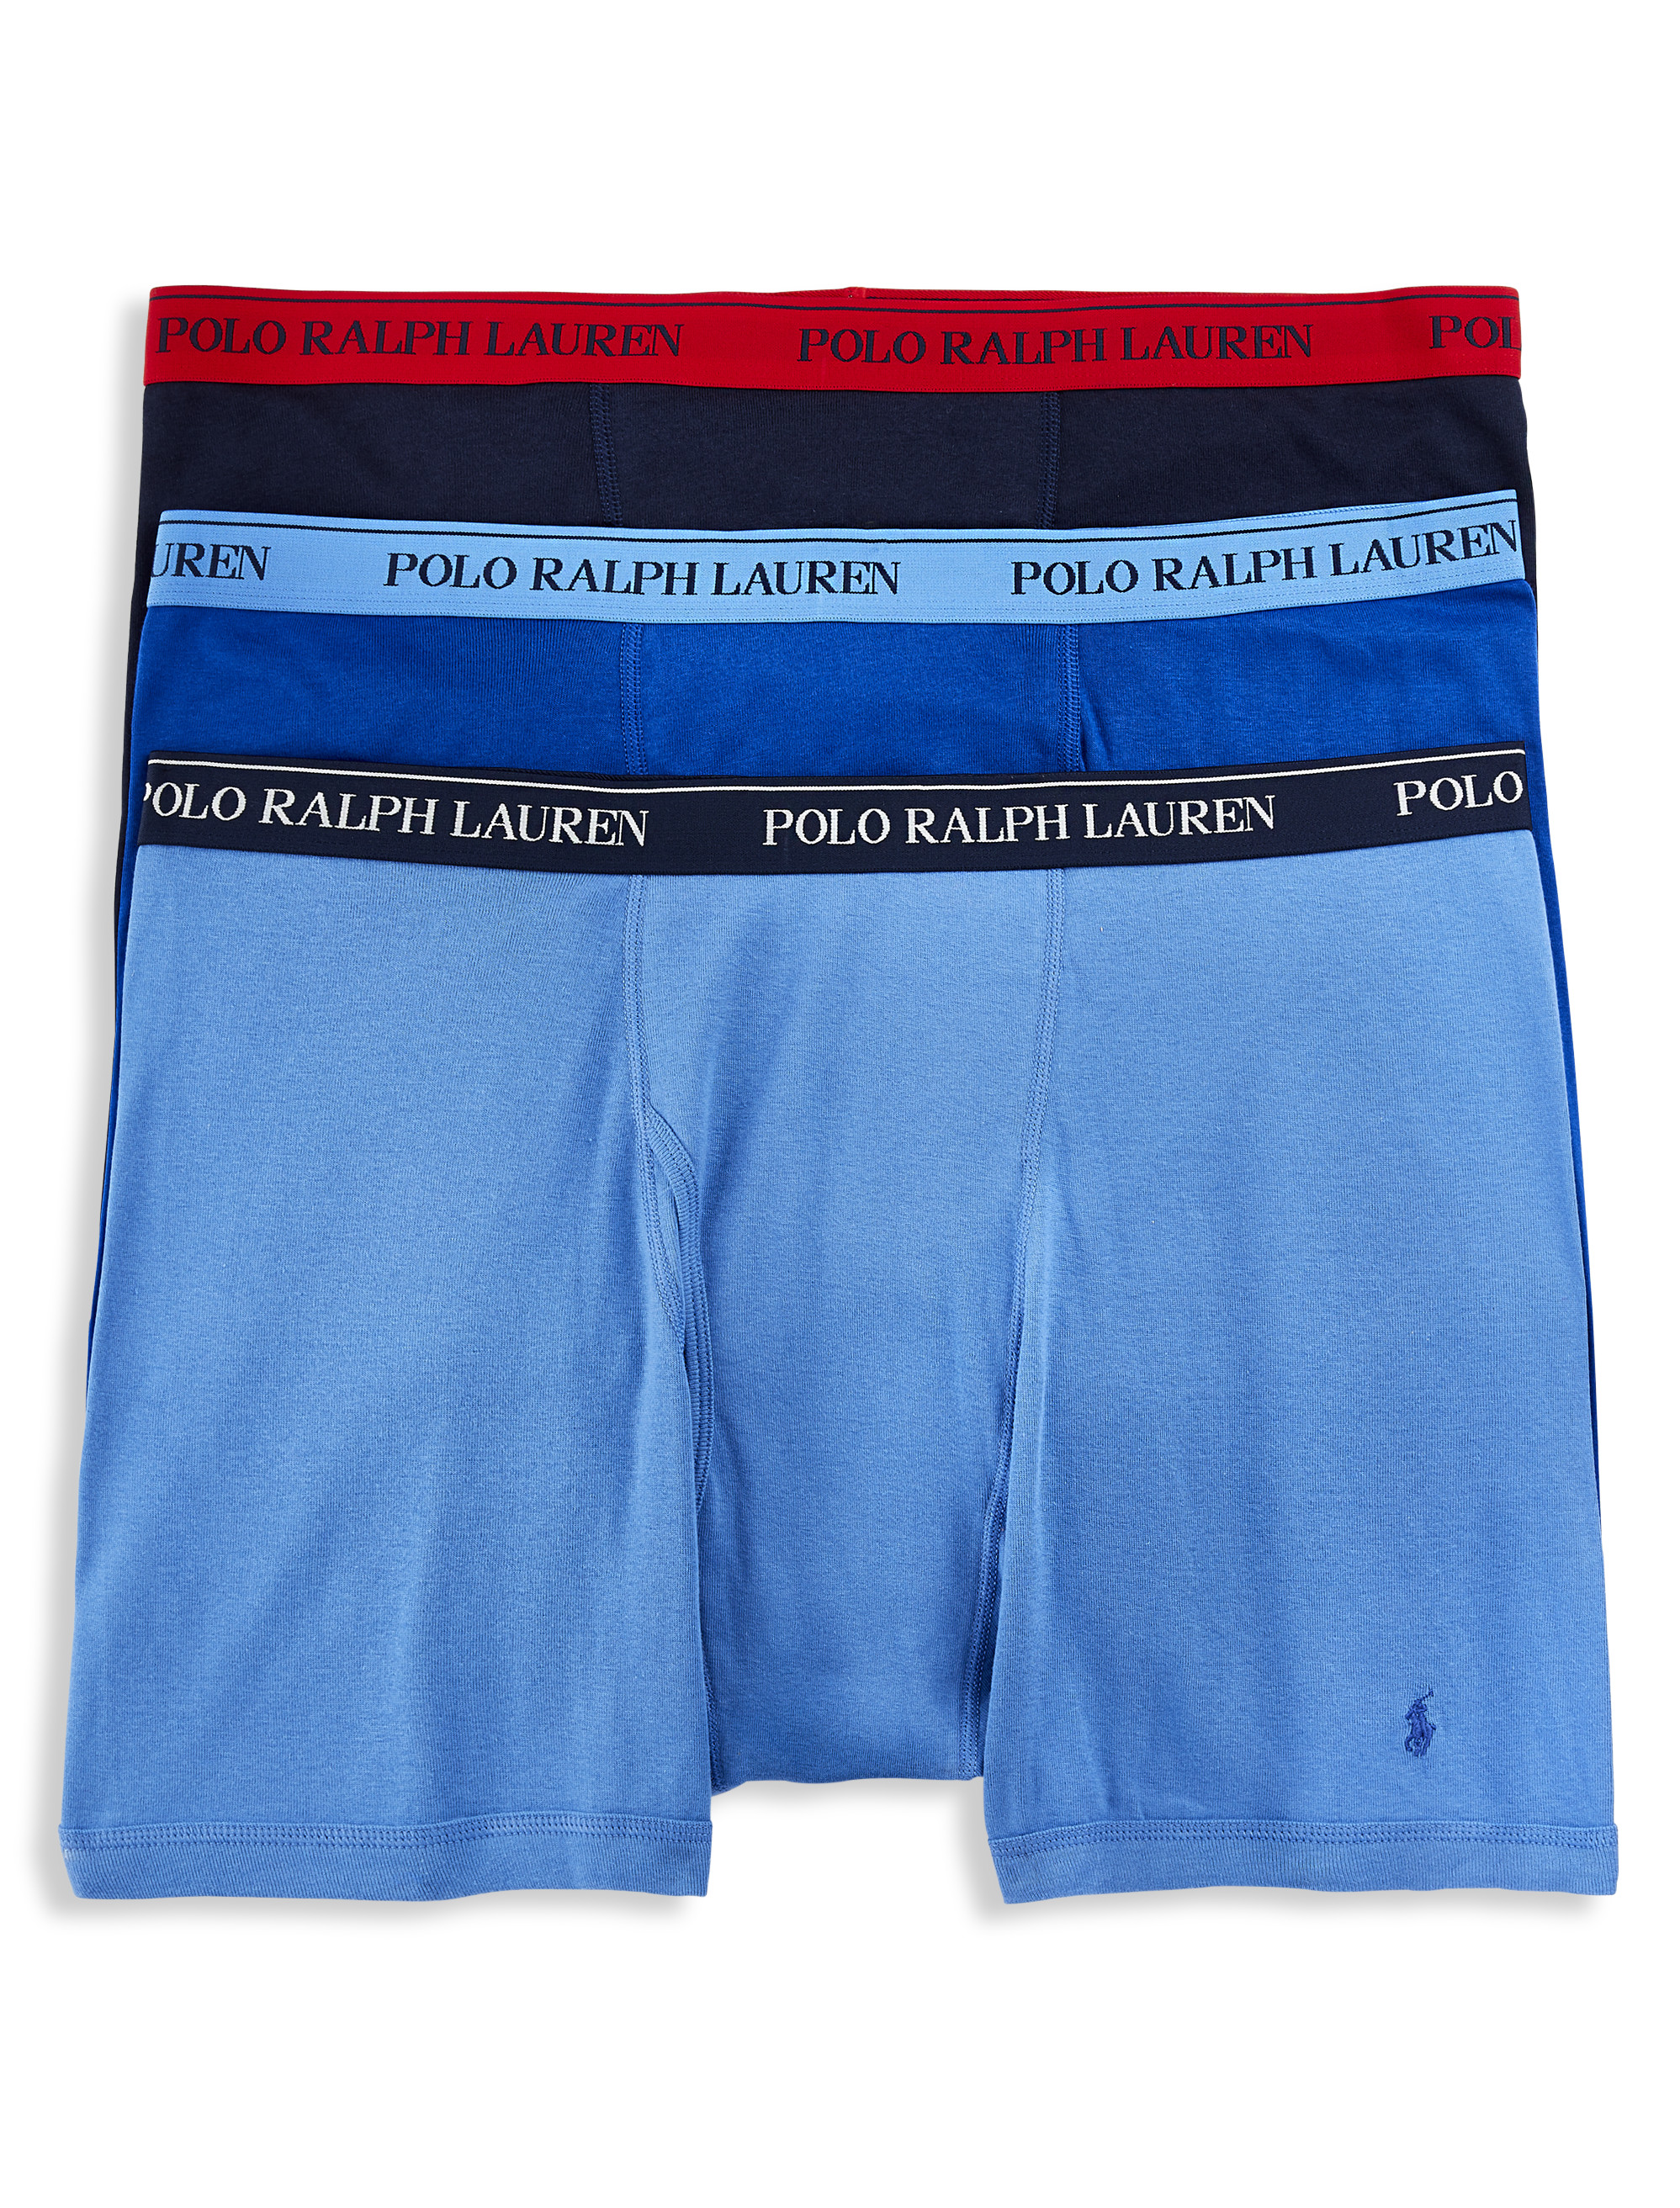 Polo Ralph Lauren 268335 Men's 3 Pack Boxer Briefs Underwear Size XL